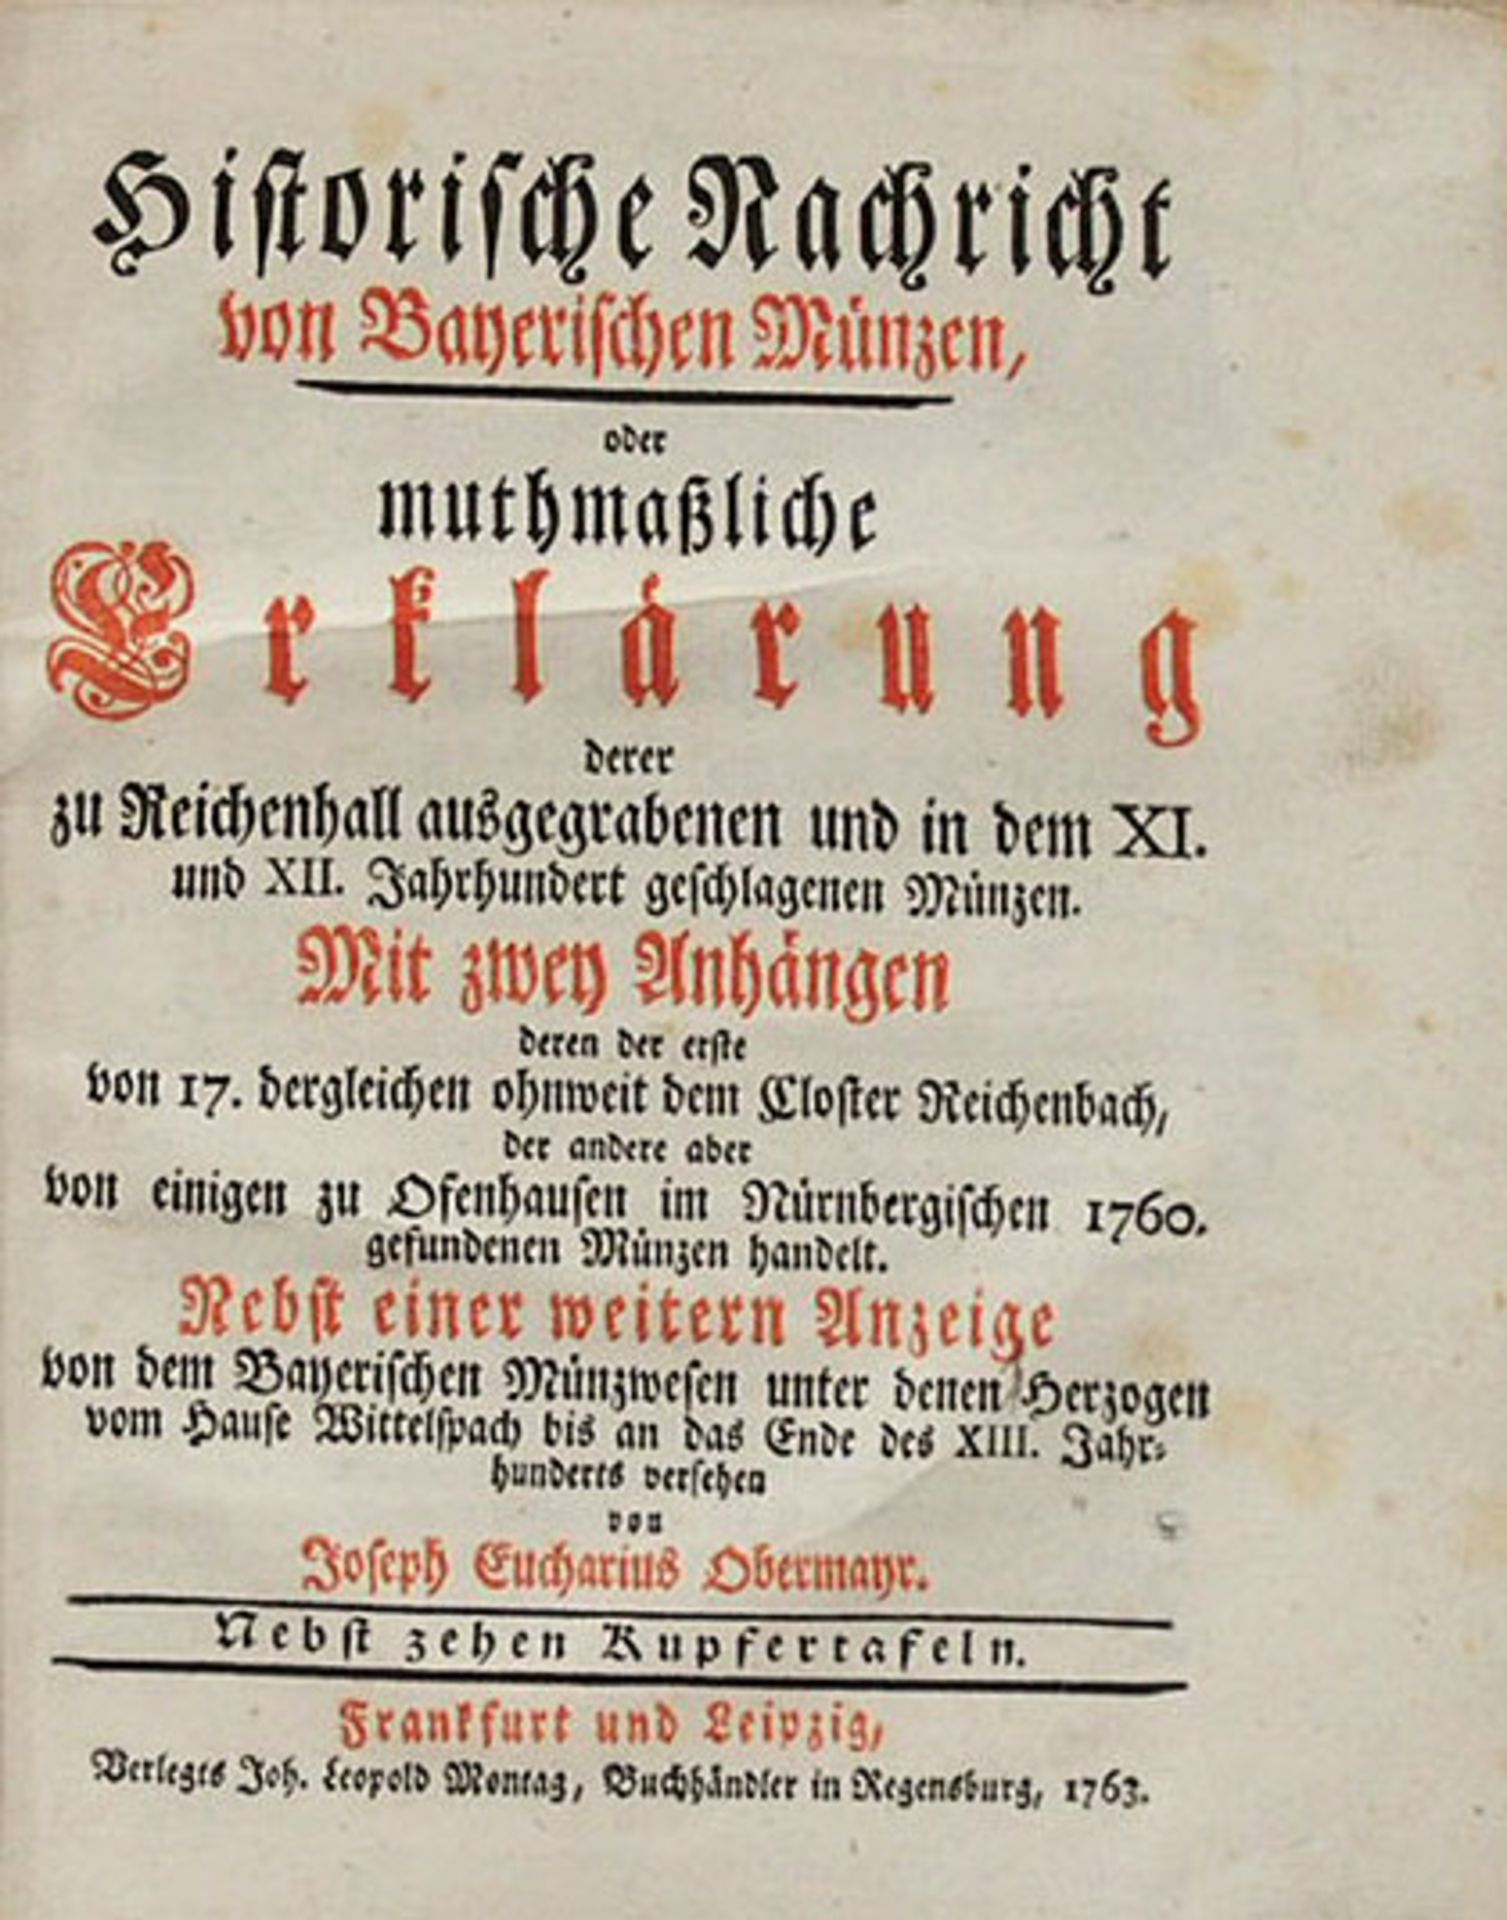 OBERMAYR, Joseph Eucharius: Historische Nachricht von Bayerischen Münzen...